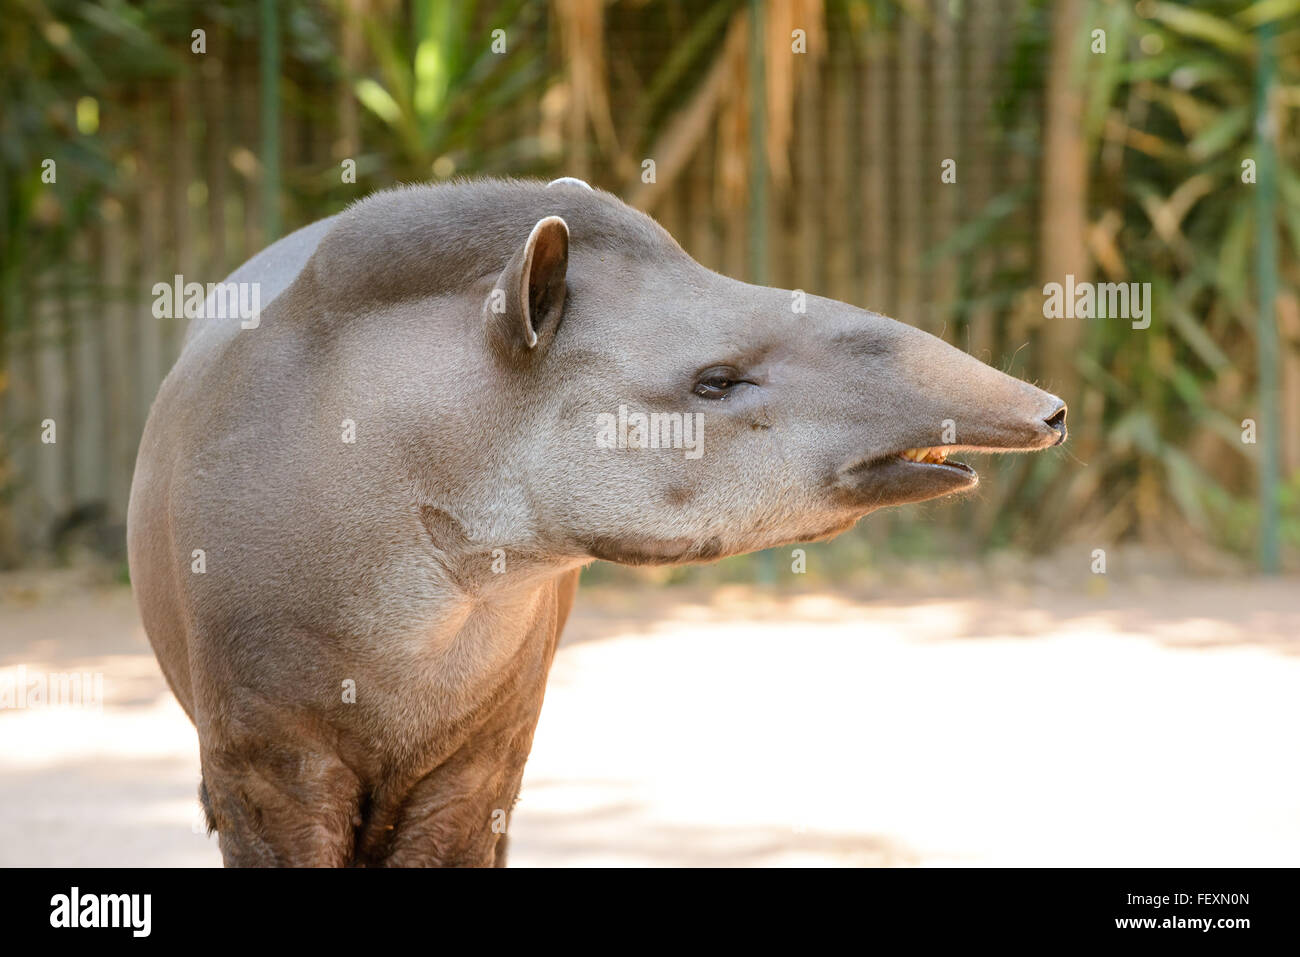 the strange tapir animal with him strange nose Stock Photo